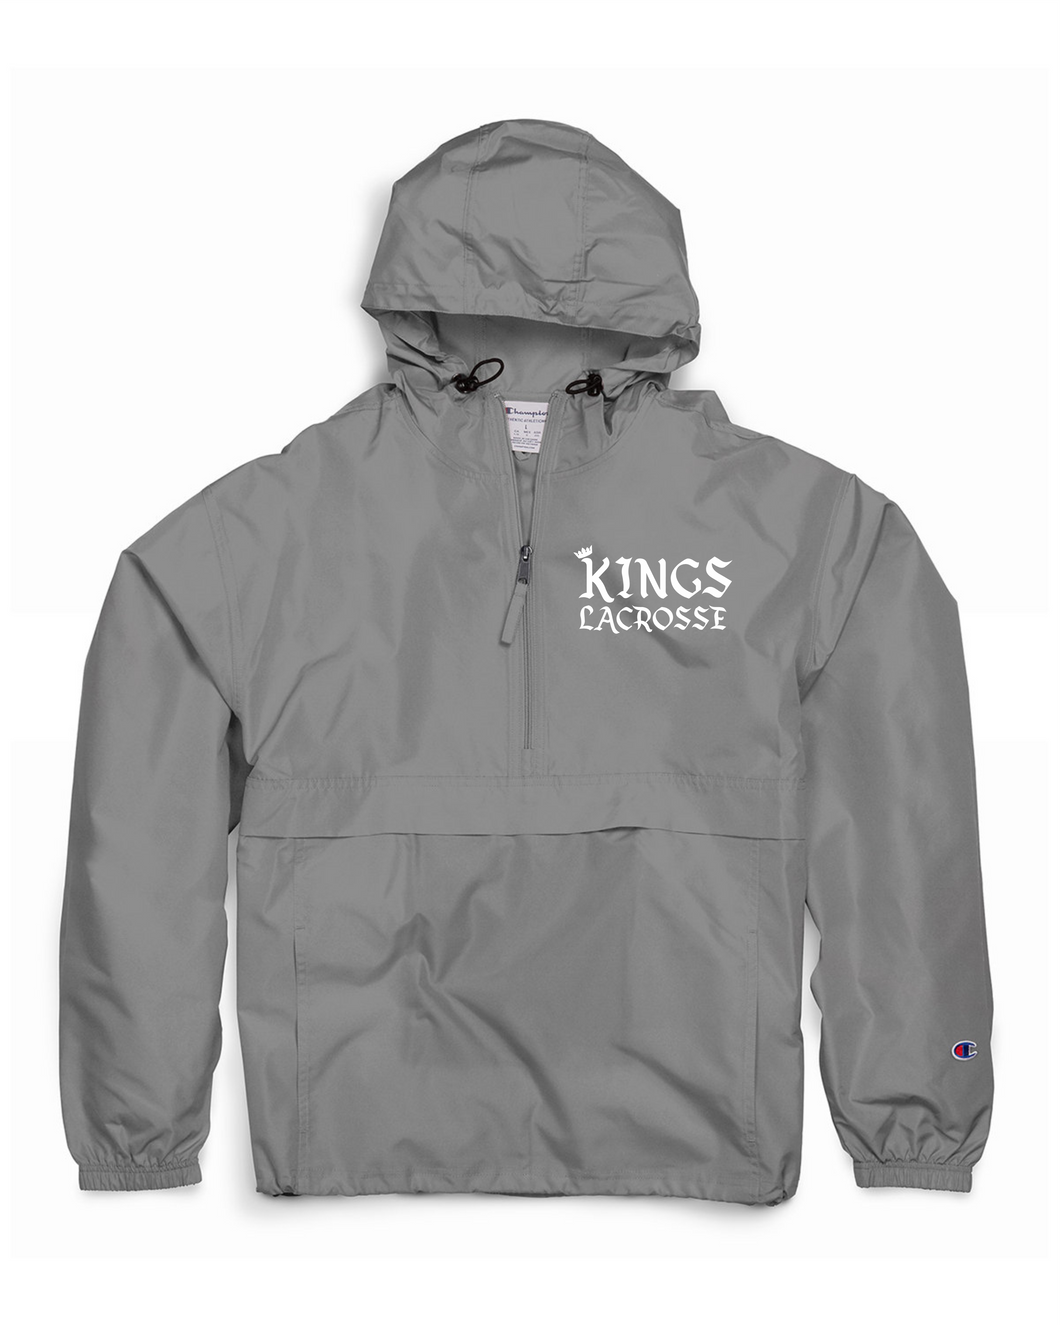 ATL-KINGS-312-1 - Champion Adult Packable Anorak 1/4 Zip Jacket - KINGS Lacrosse Logo